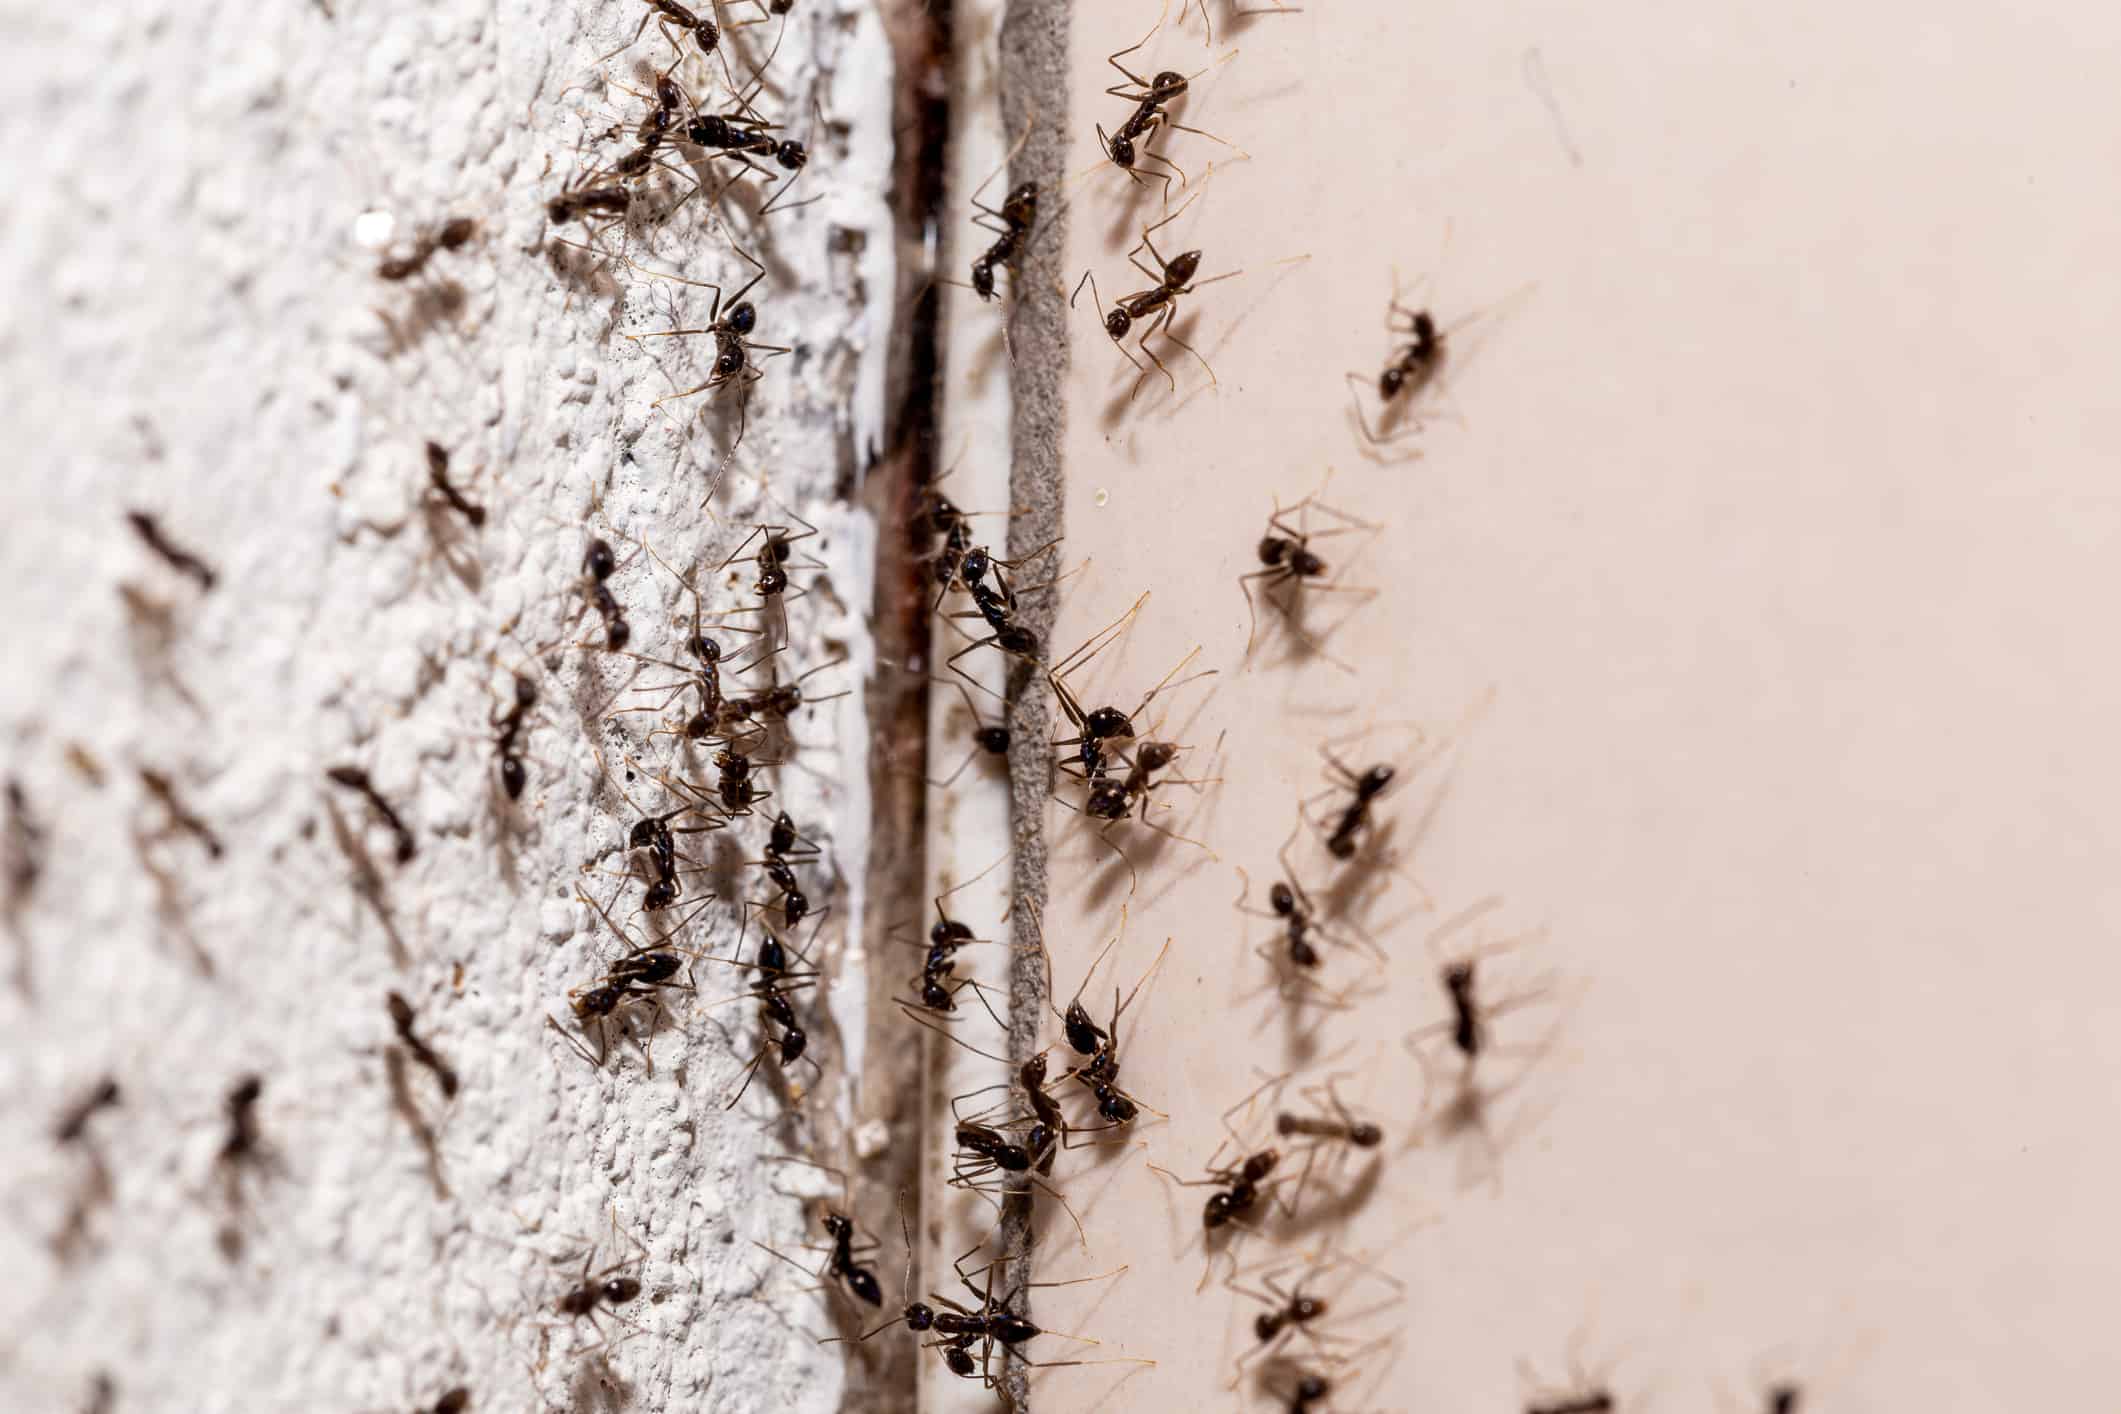 insetti sul muro, che escono attraverso la fessura nel muro, dolce infestazione di formiche all'interno